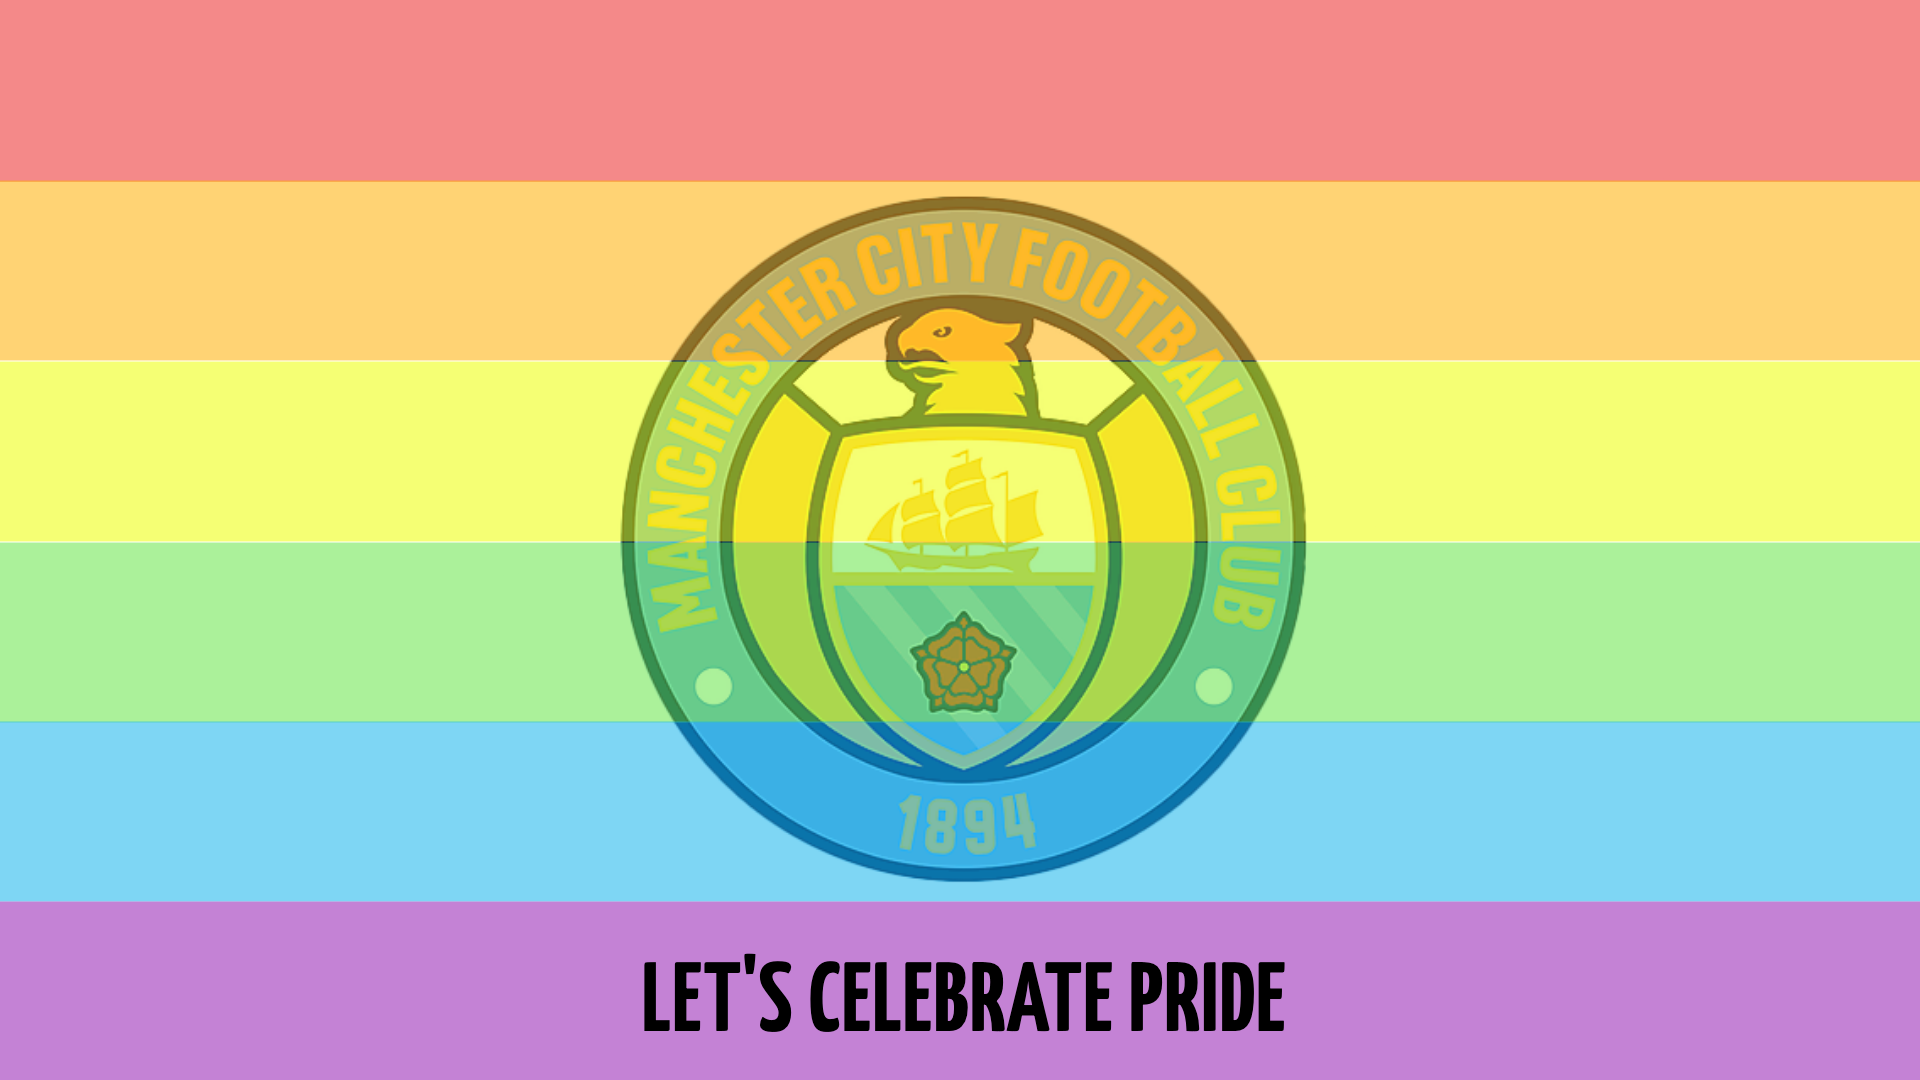 Let's Celebrate Pride Design